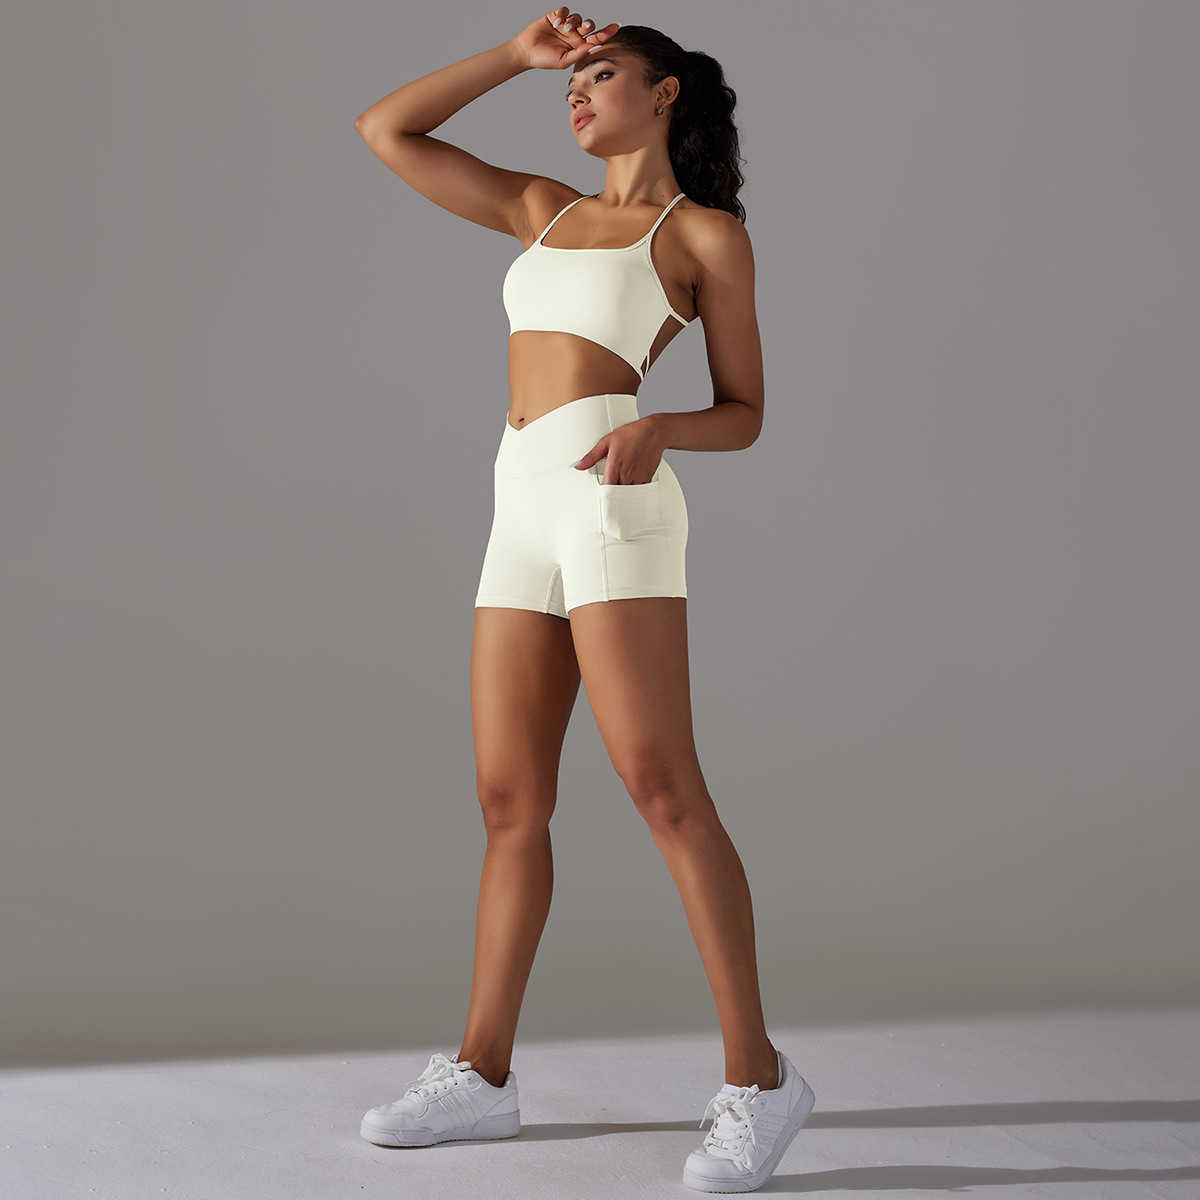 ルレマンはショートパンツ裸の通気性と非常に弾力性のあるヨガブ美しいバックネストップランニングスポーツブラジャーヨガスーツセット女性向け